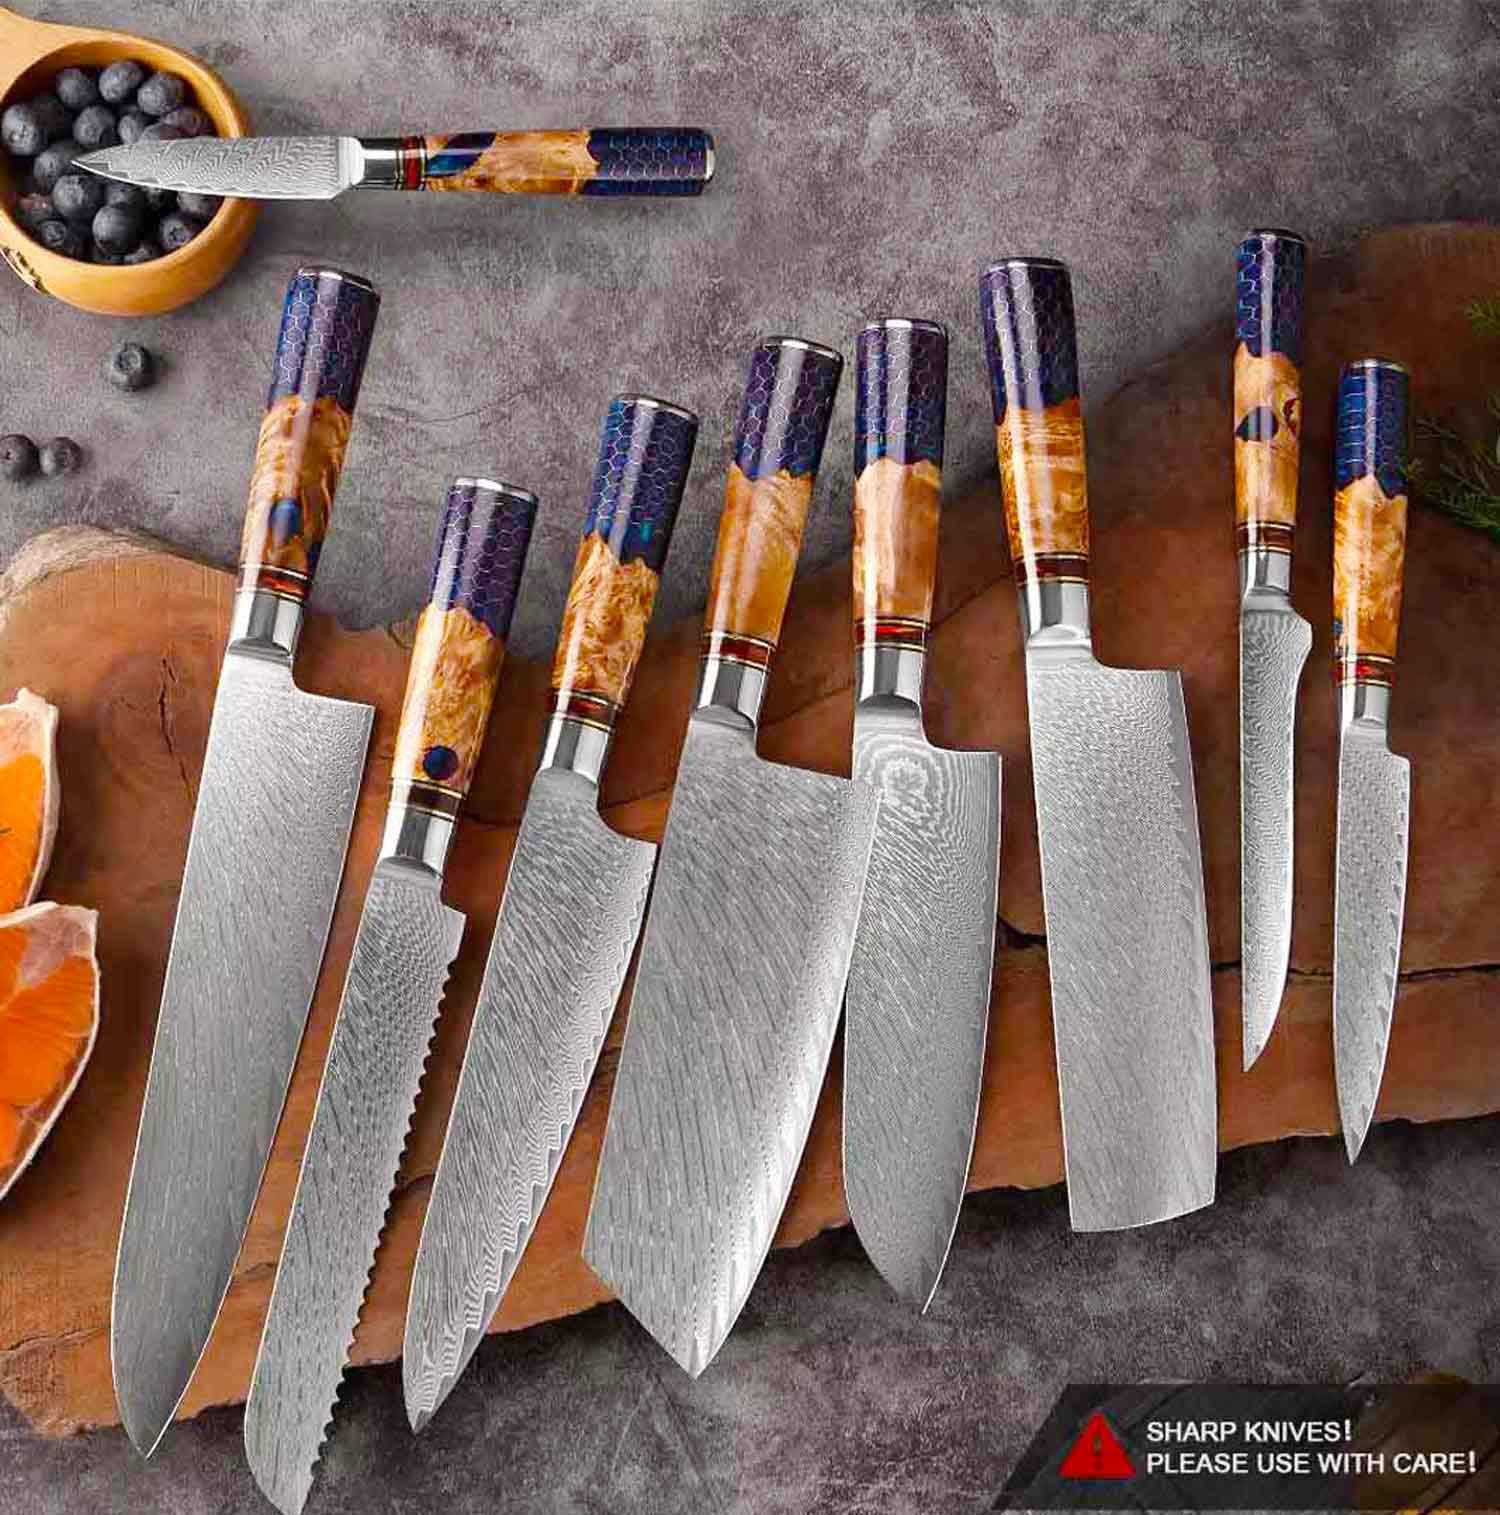 Muxel Allzweckmesser Damast Küchenmesser Set 9-tlg Extrem scharfe extrem schöne Kochmesser, Jedes Messer ist ein Unikat | Spickmesser